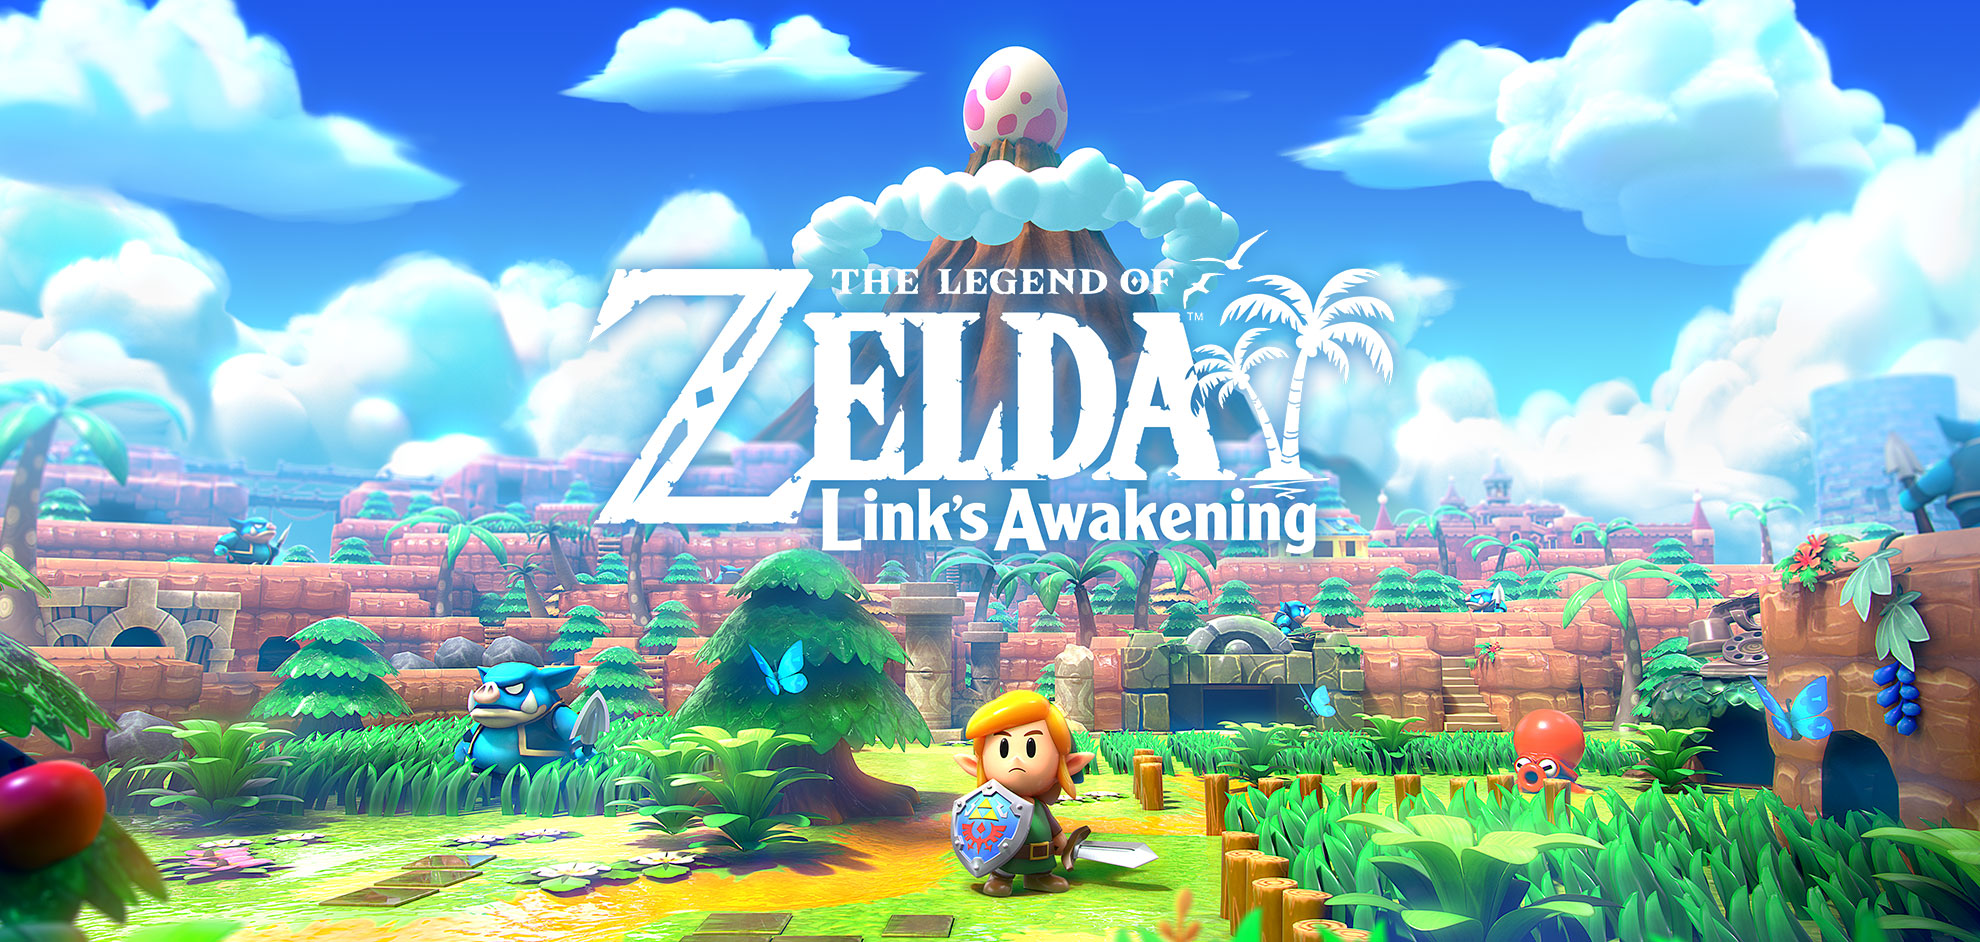 The Legend of Zelda™: Awakening | | Nintendo